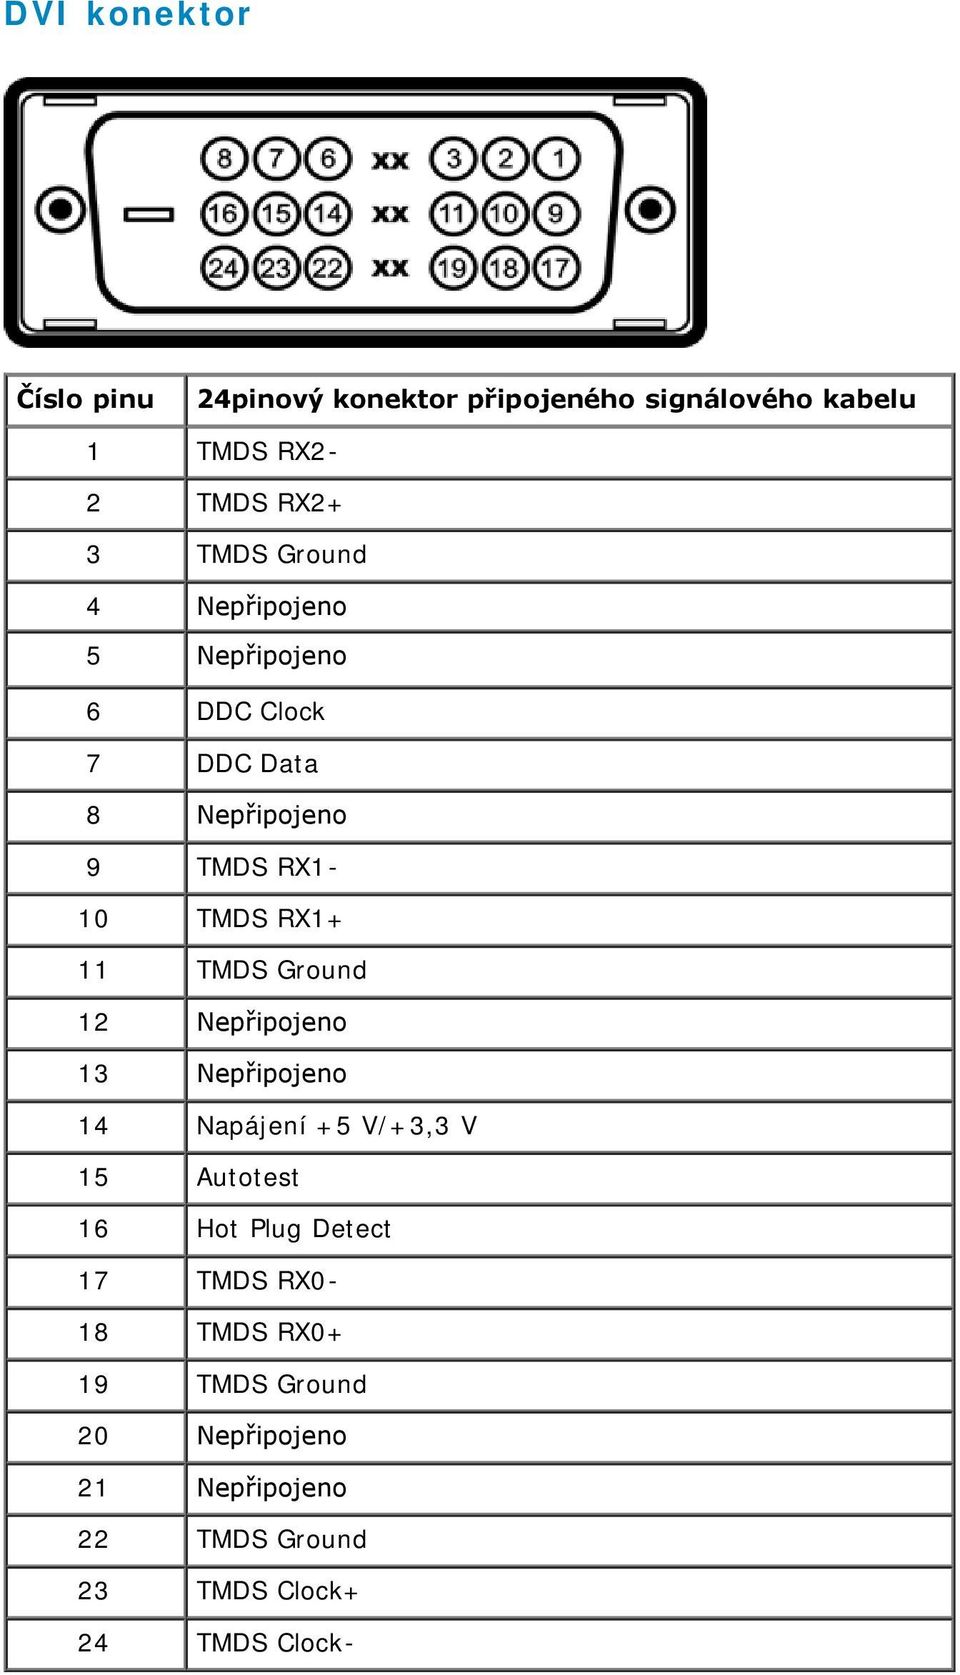 Ground 12 Nepřipojeno 13 Nepřipojeno 14 Napájení +5 V/+3,3 V 15 Autotest 16 Hot Plug Detect 17 TMDS